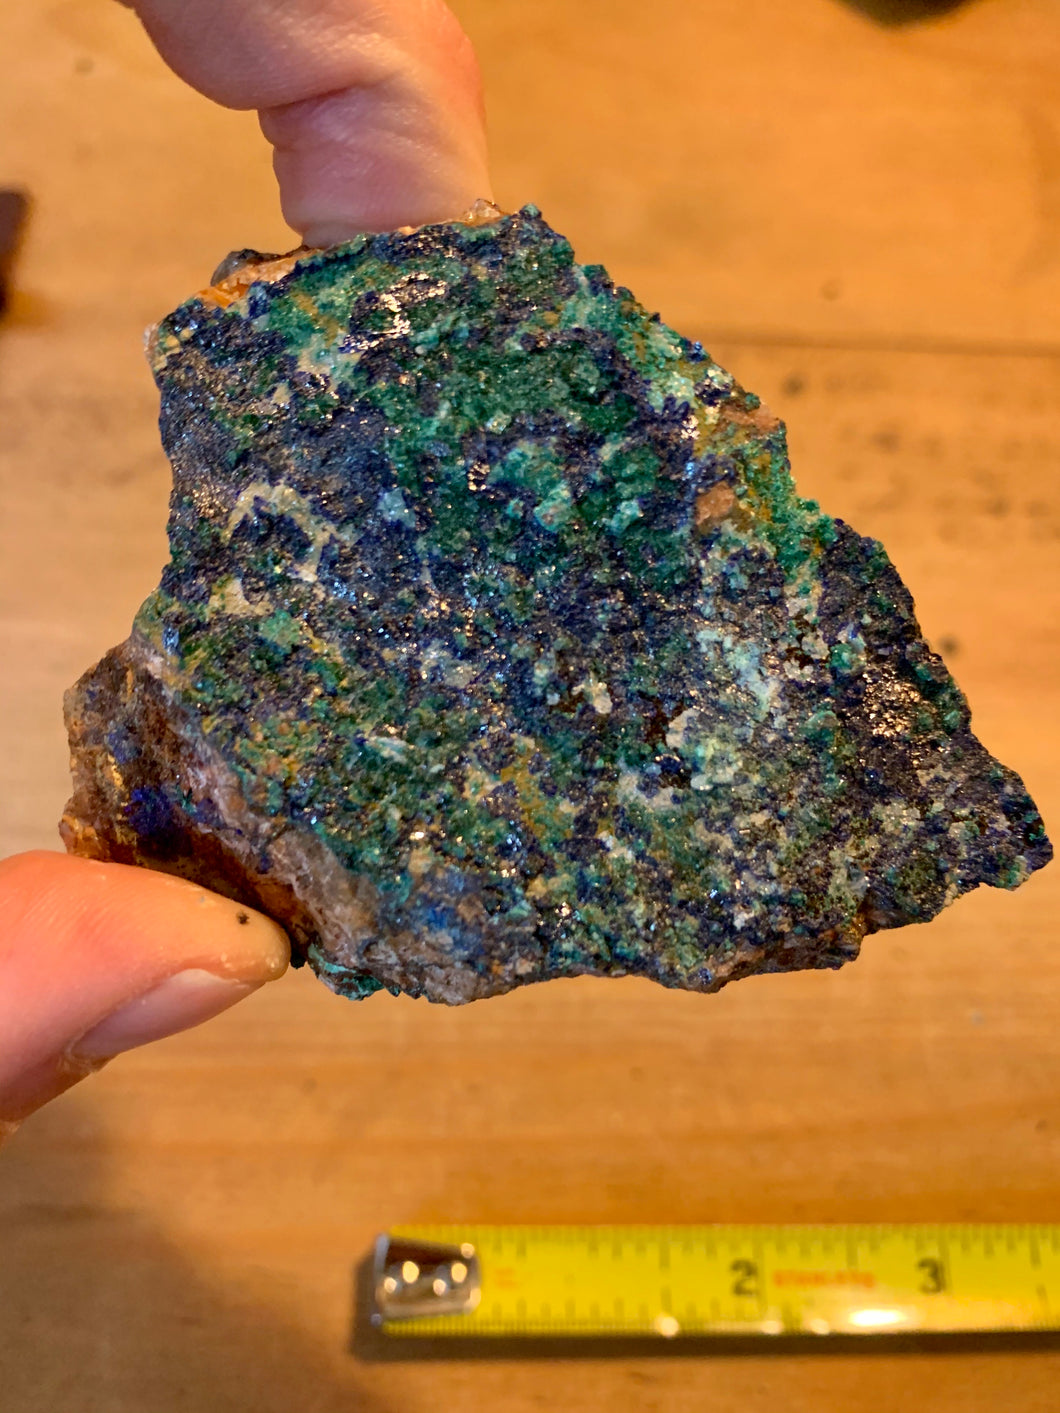 Azurite Malachite - 82g - Small